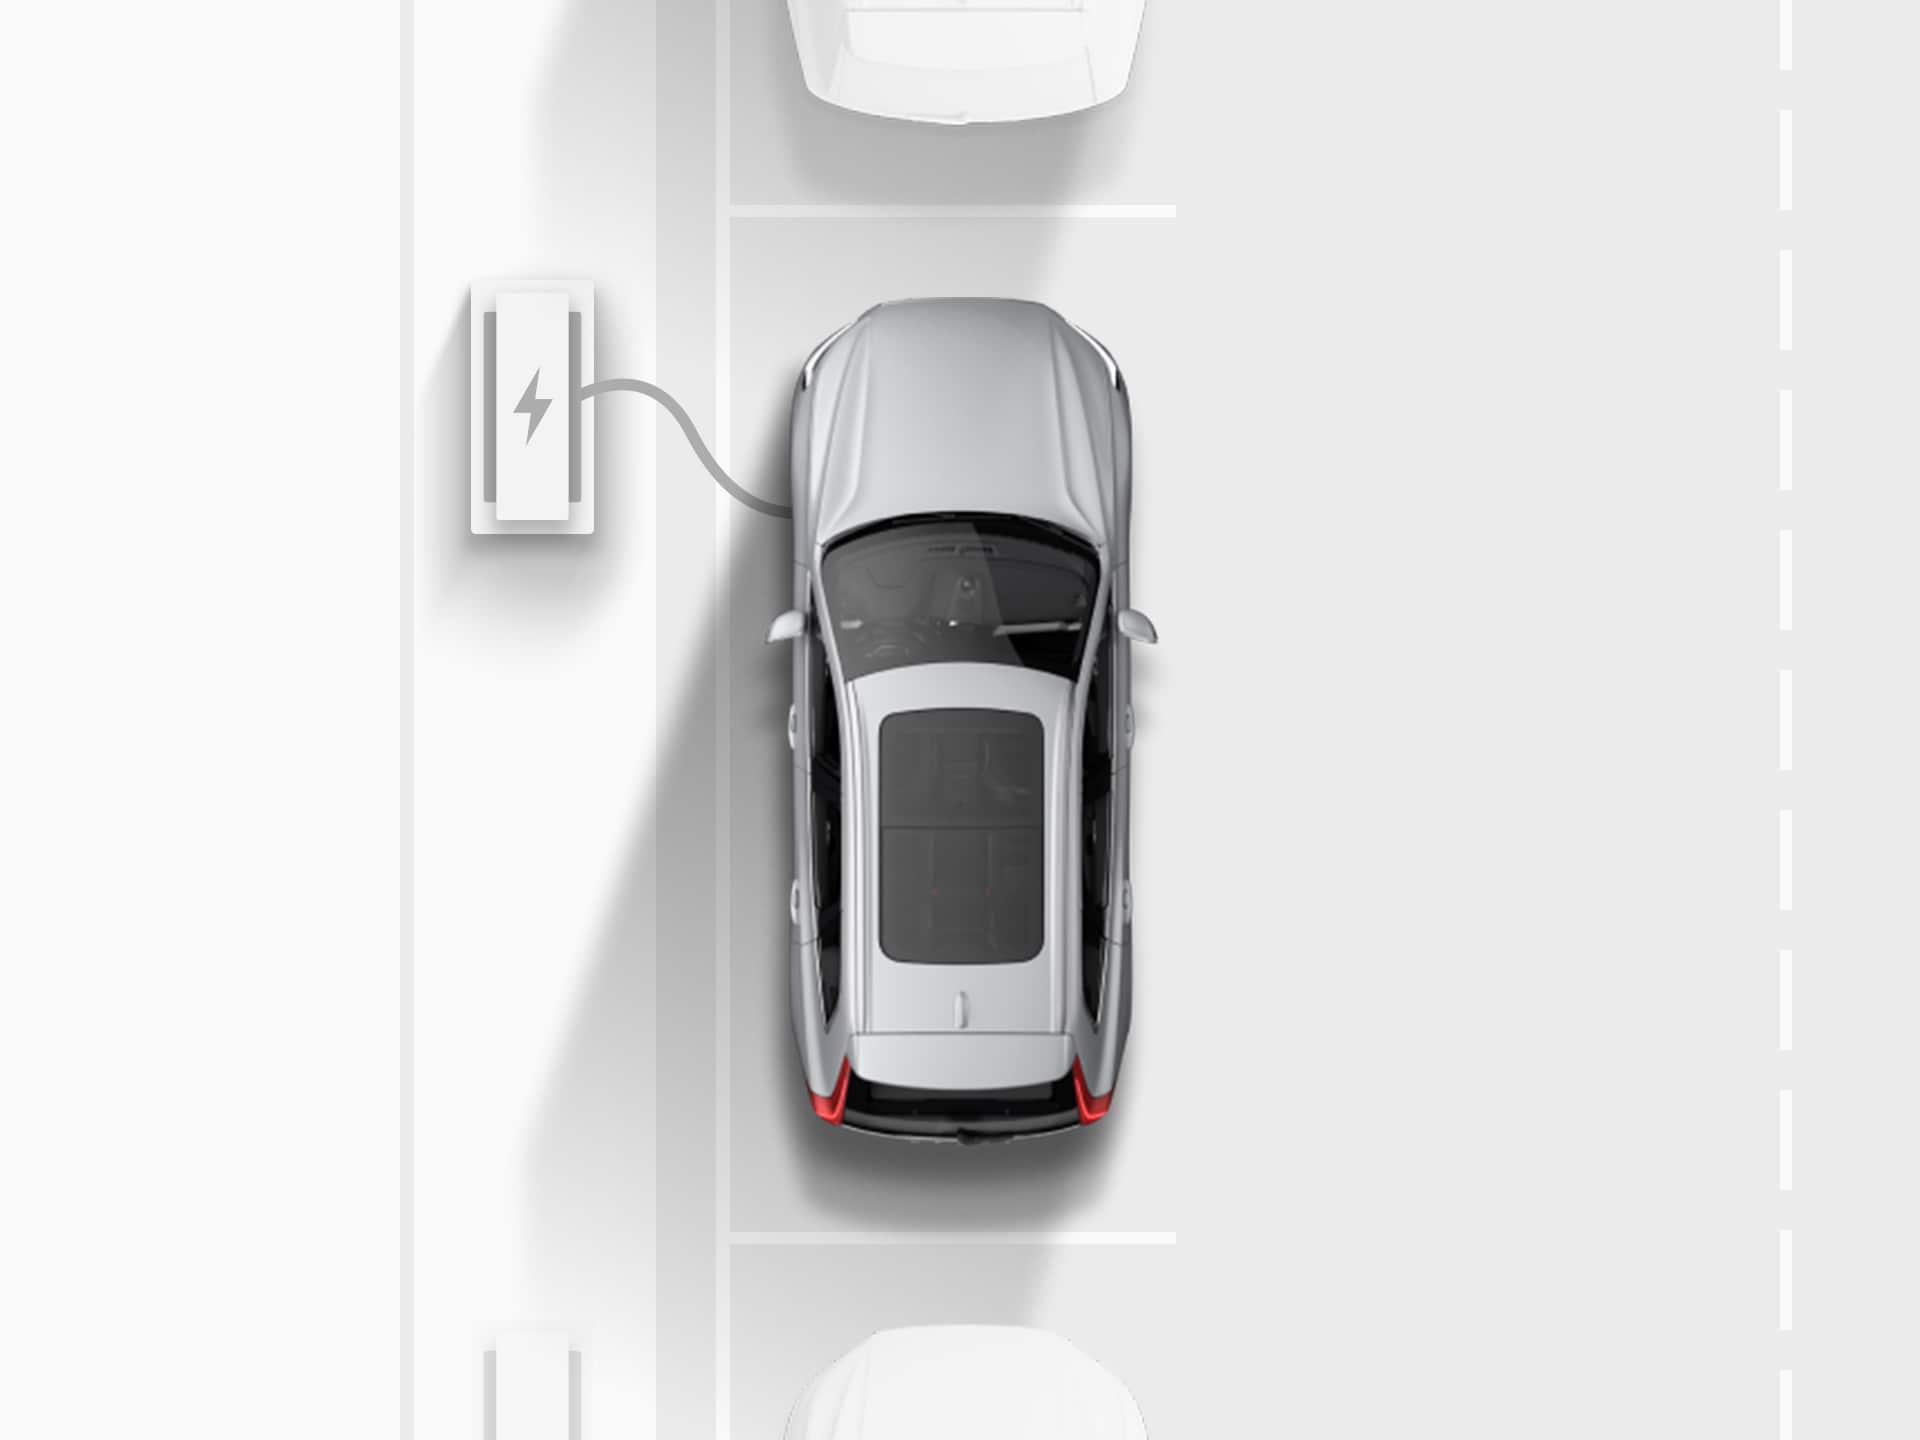 Digitāla attēla skats no augšas uz sudraba krāsas Volvo XC40 Recharge pilnība elektrisko apvidus automašīnu, kas pievienota uzlādes stacijai, kamēr paralēli novietota uz ielas.